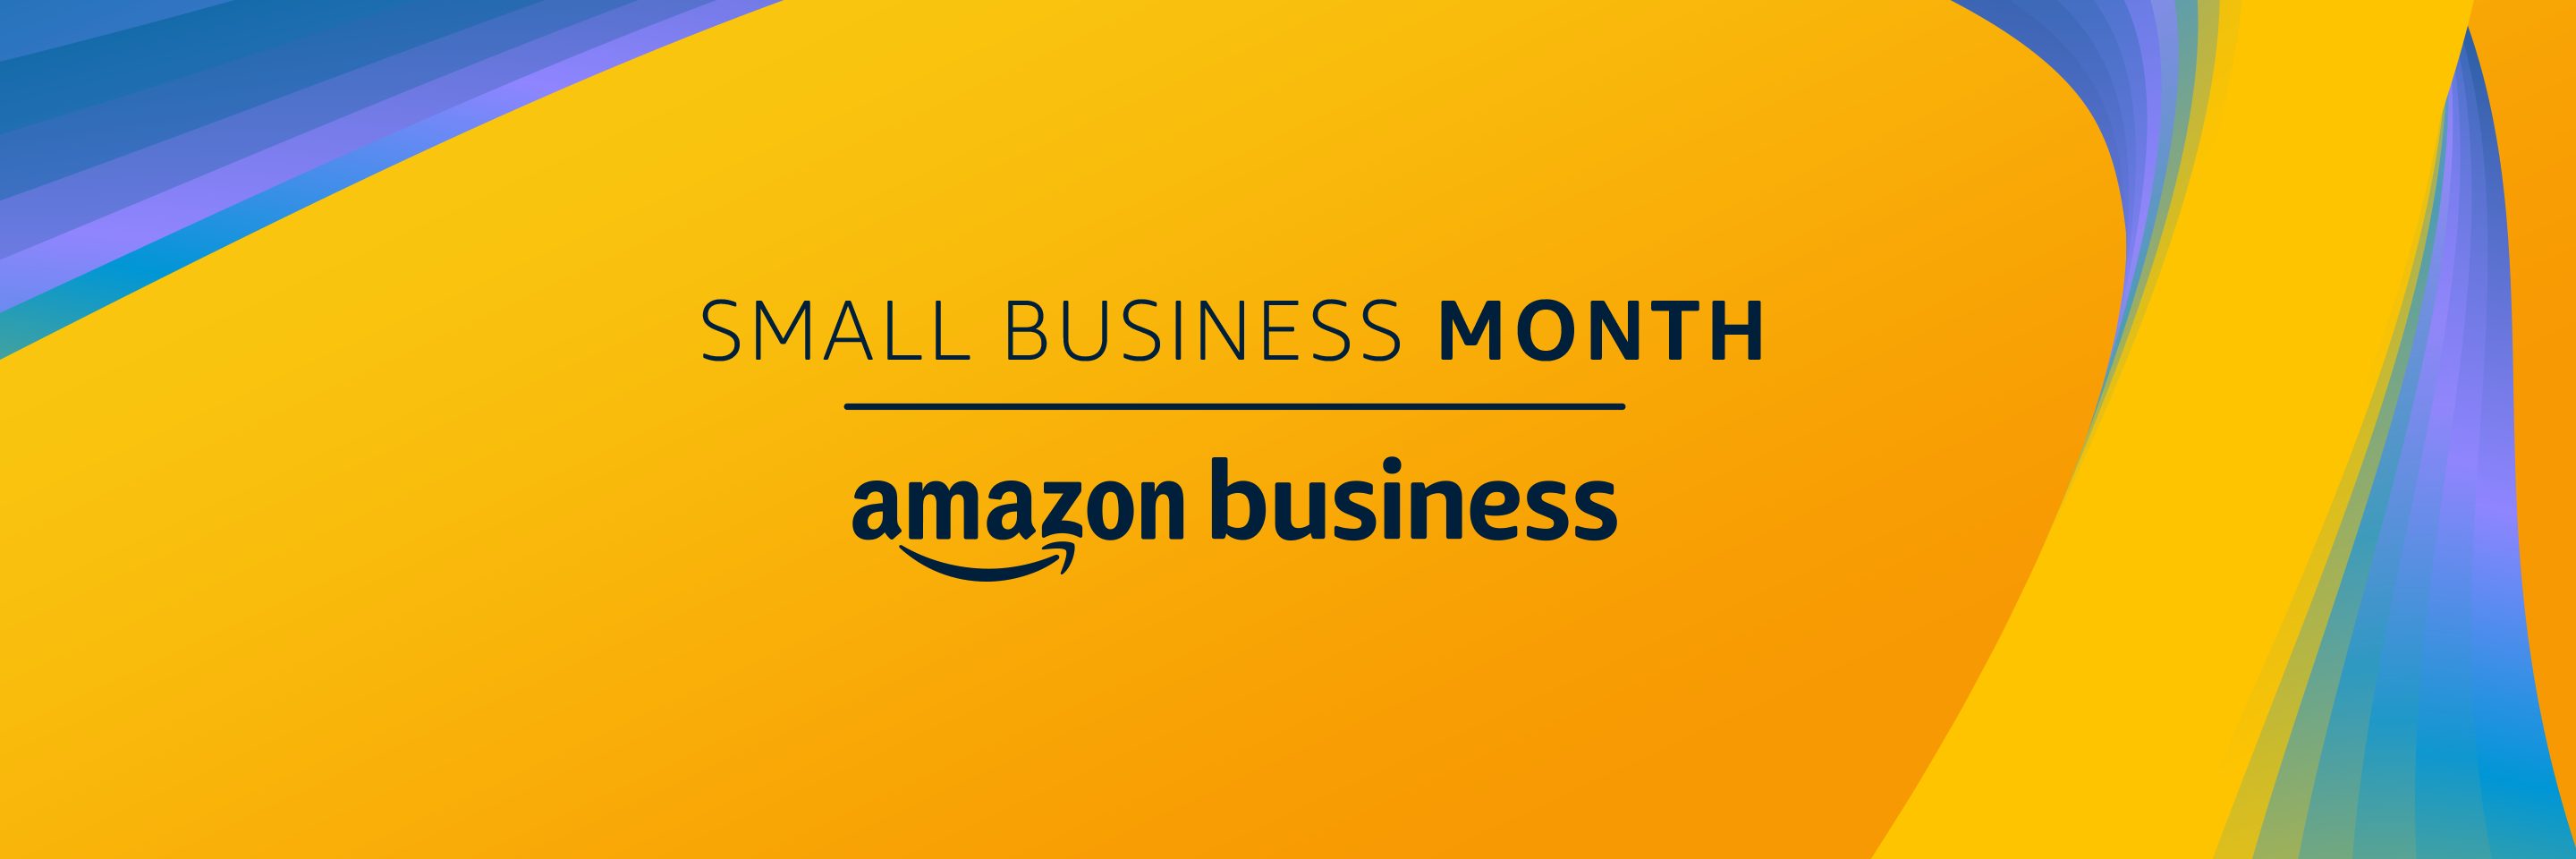 Anuncio de las ofertas del mes de la pequeña empresa de Amazon Business